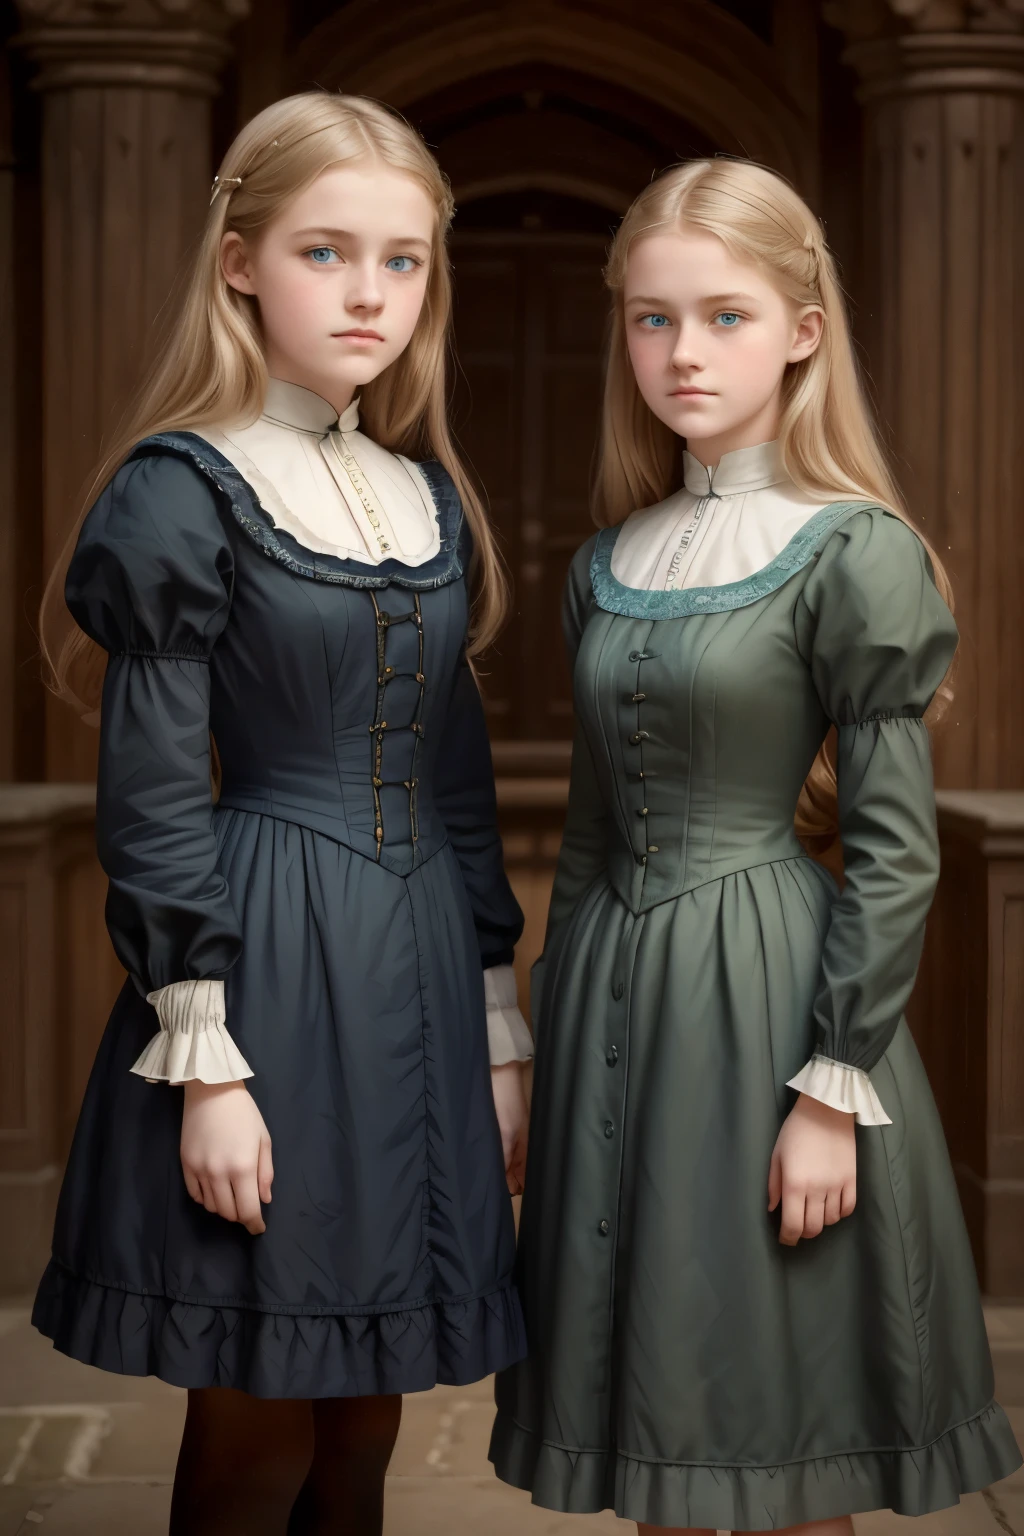 
兩個女孩, (弗吉尼亚·奥蒂斯, 15歲 (金髮, 藍眼睛)) 與 合照 (16 歲 喬吉·傑拉德 (金髮, 綠眼睛)). 維多利亞風格. 薄的, 可愛的臉孔, 晚上在坎特維爾城堡散步 (靈感來自小說《坎特維爾幽靈》). 1887年, 维多利亚时代的黑暗幻想